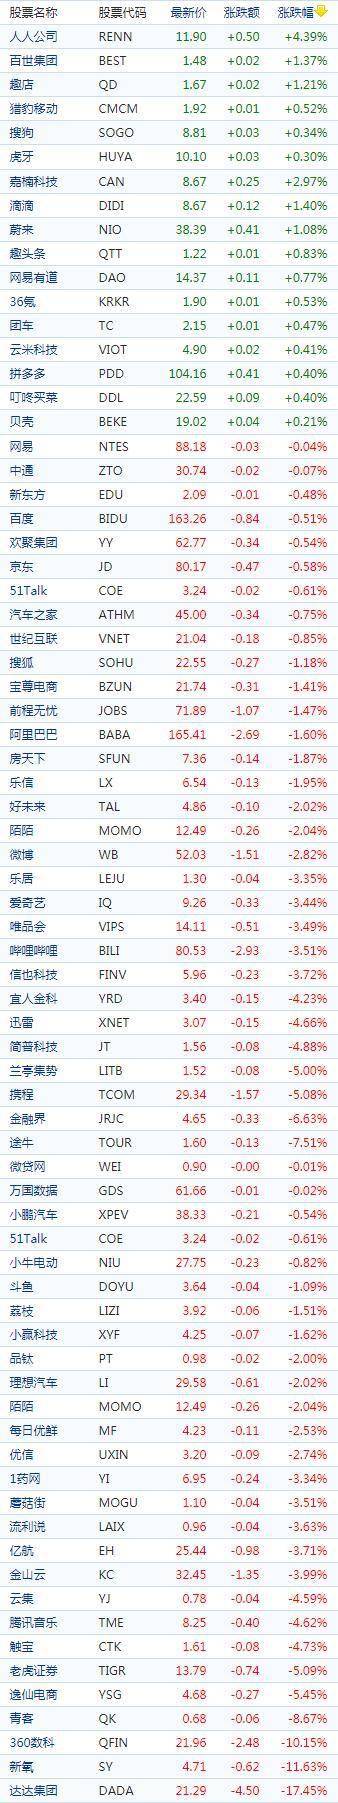 中国概念股周一收盘多数下跌 达达集团跌超17%